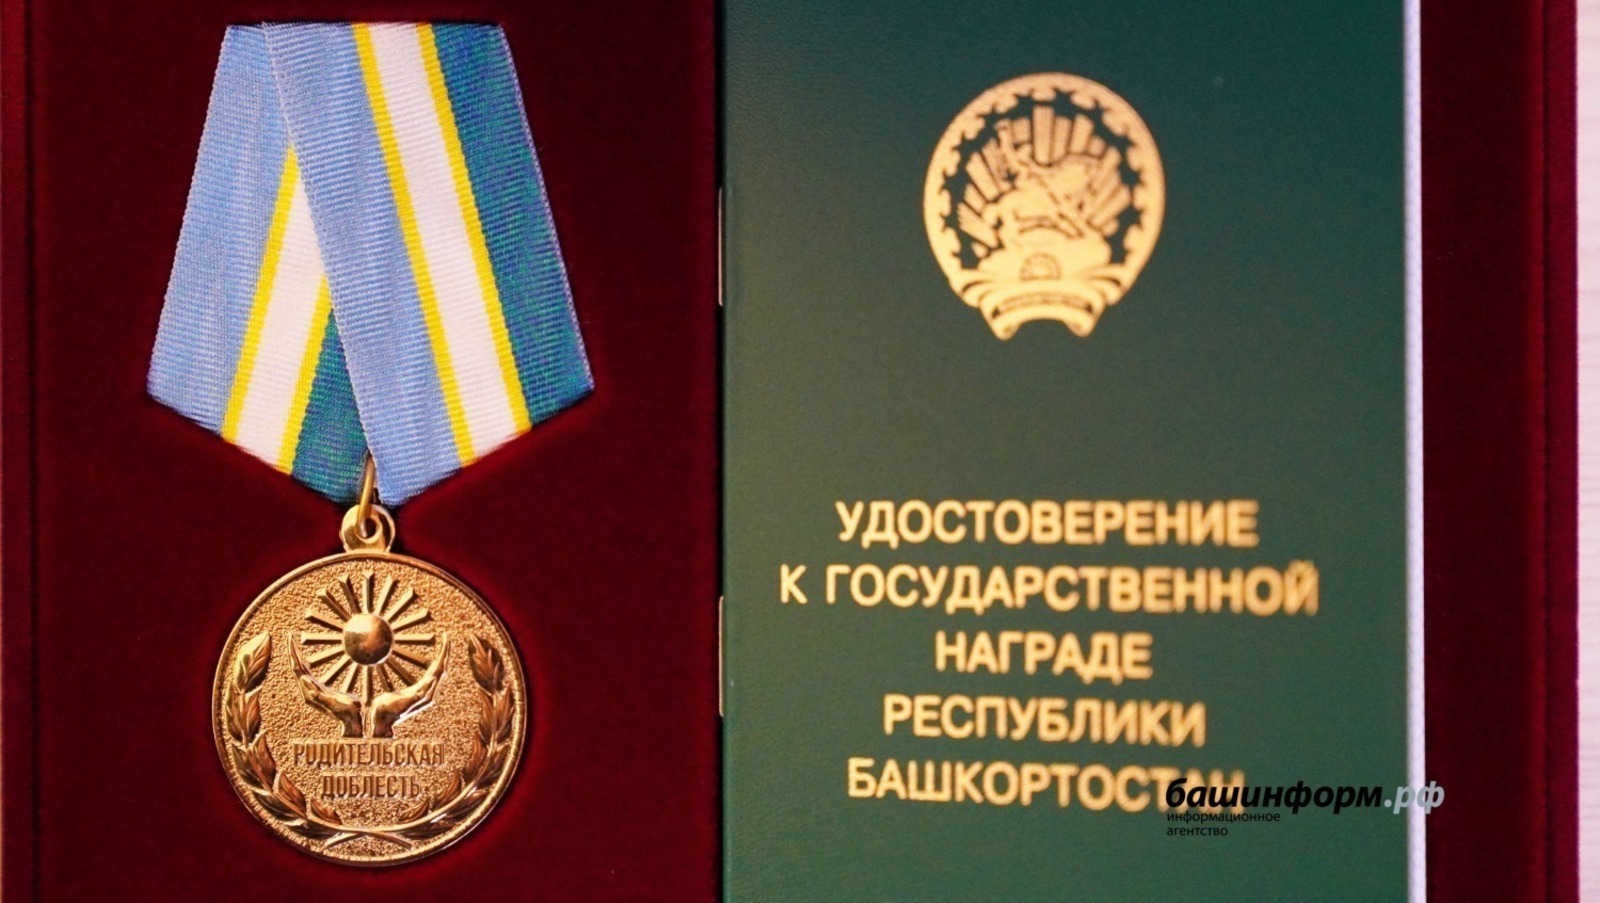 В Башкирии внесли изменения в положение о награде «Родительская доблесть».